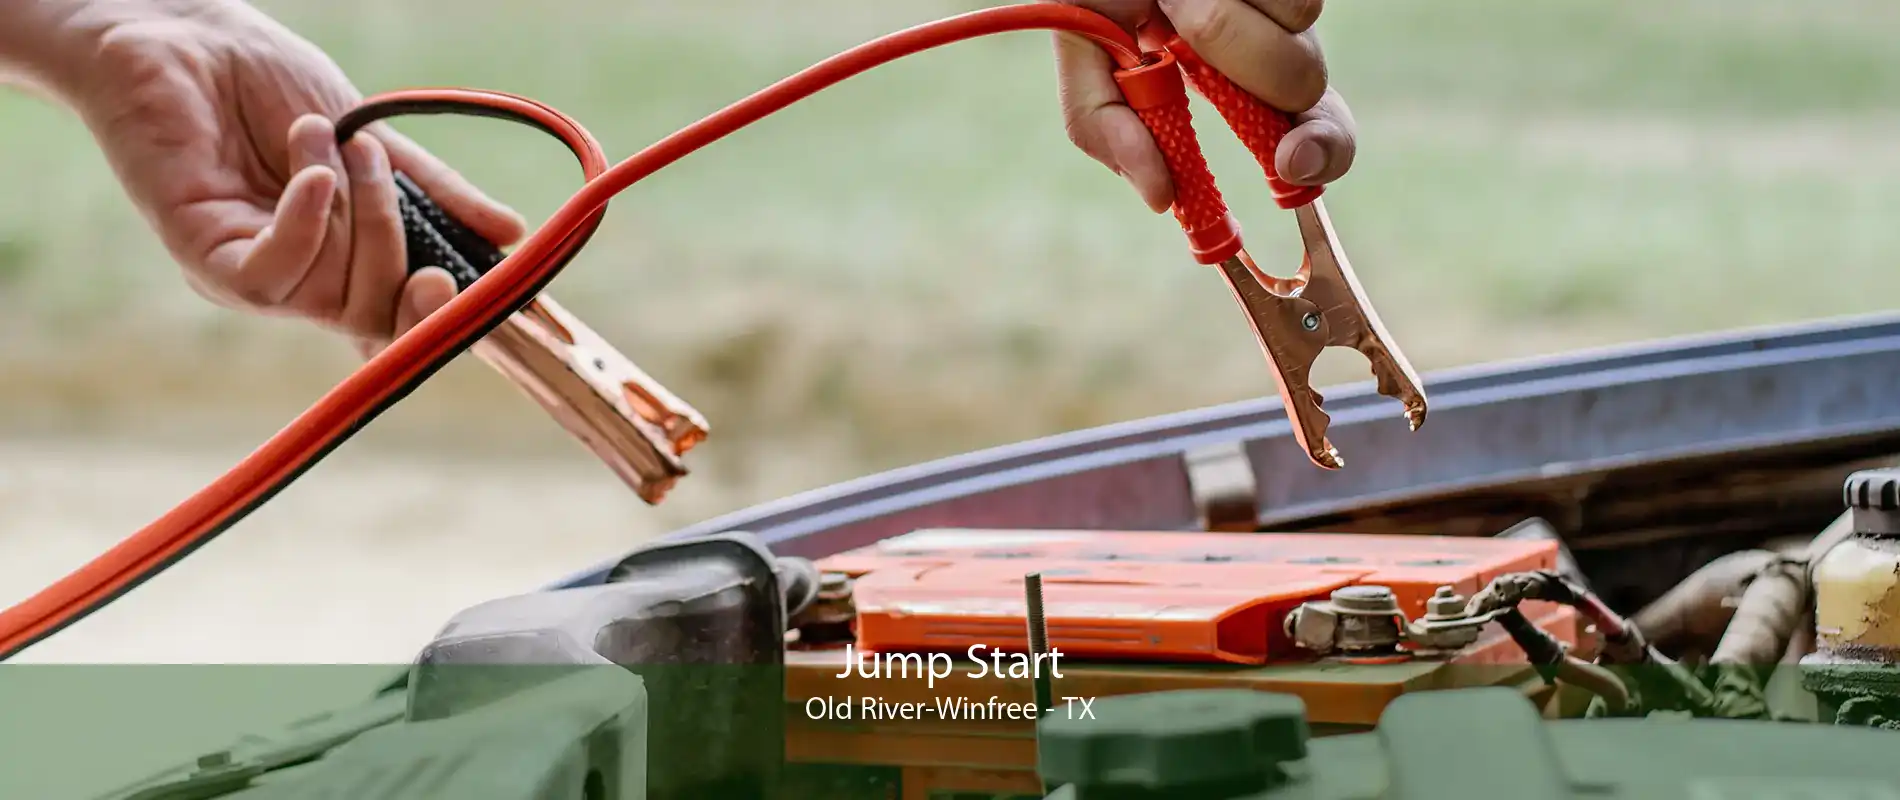 Jump Start Old River-Winfree - TX